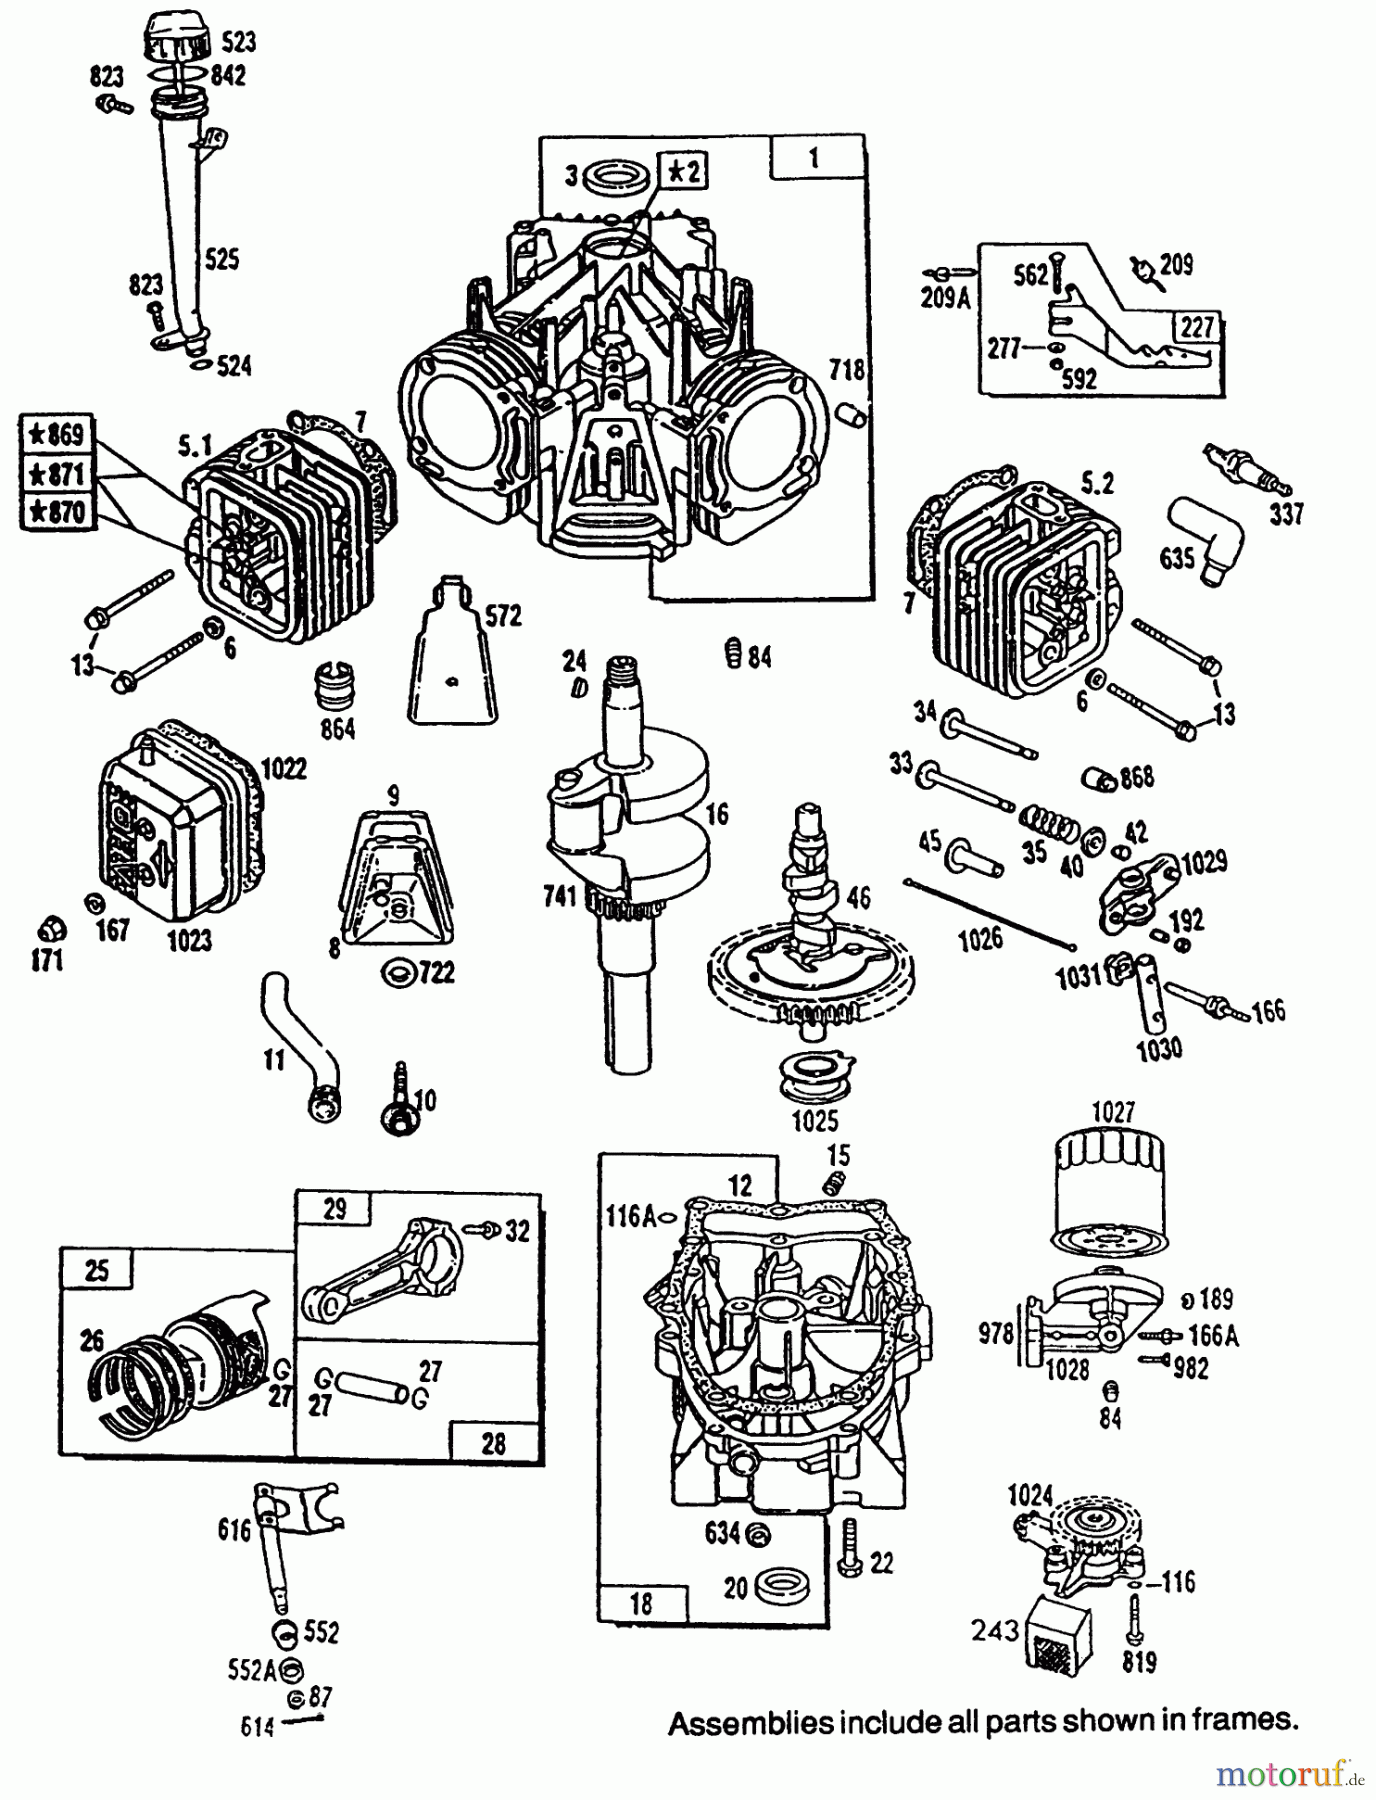  Toro Neu Mowers, Lawn & Garden Tractor Seite 1 72081 (246-H) - Toro 246-H Yard Tractor, 1993 (3900001-3999999) ENGINE TORO POWER PLUS #1